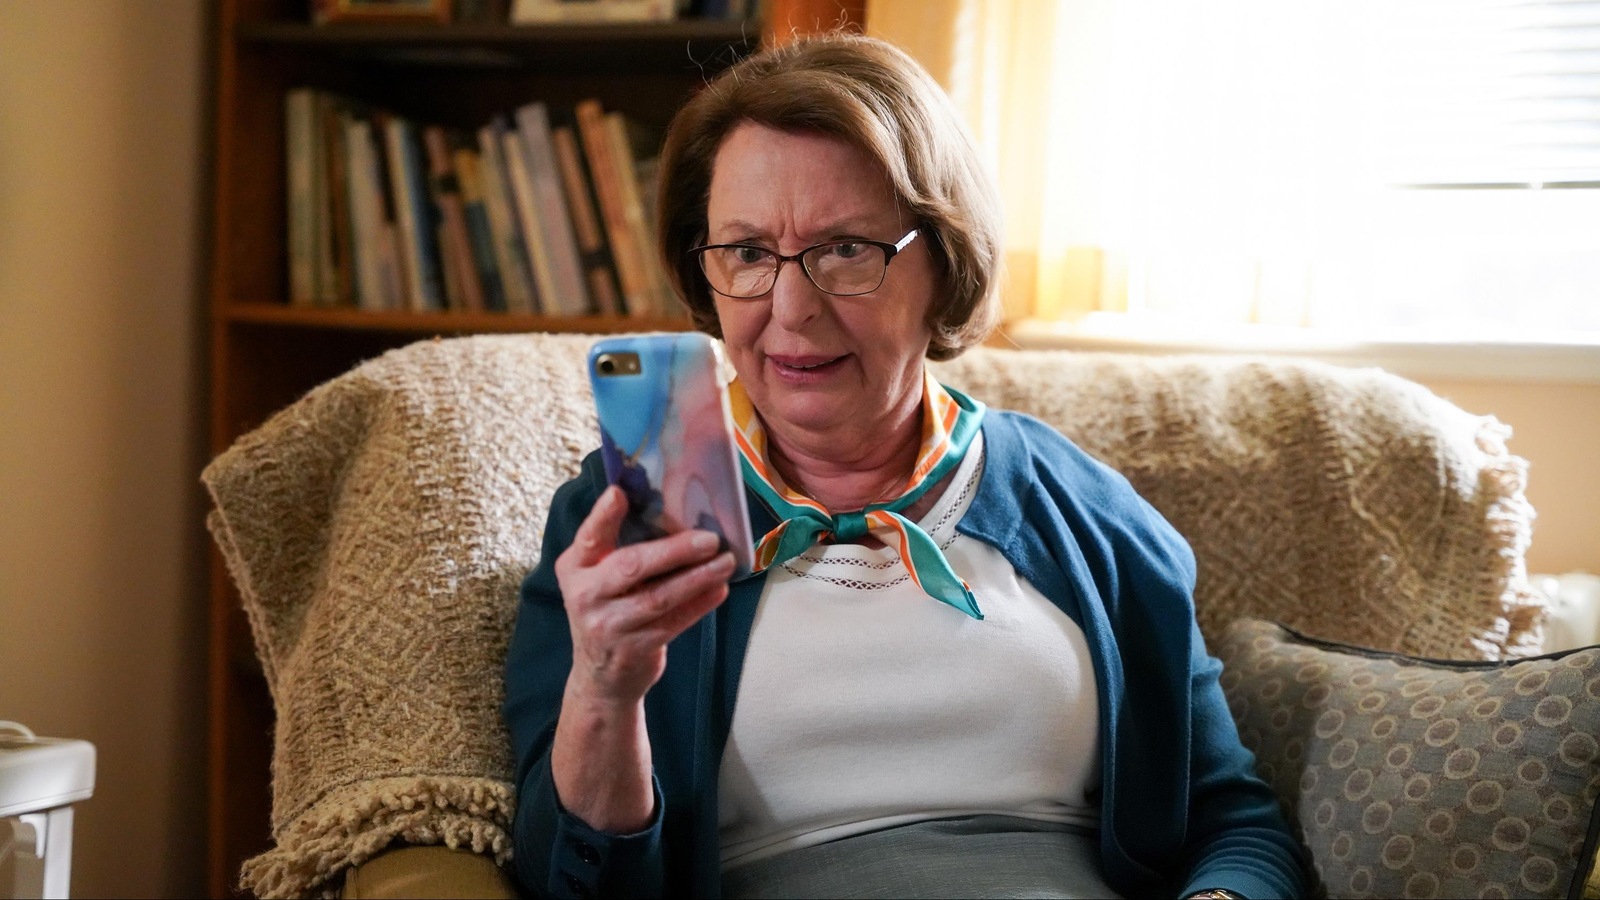 Rollande (Marie-Ginette Guay) regarde son téléphone intelligent avec un air incrédule.